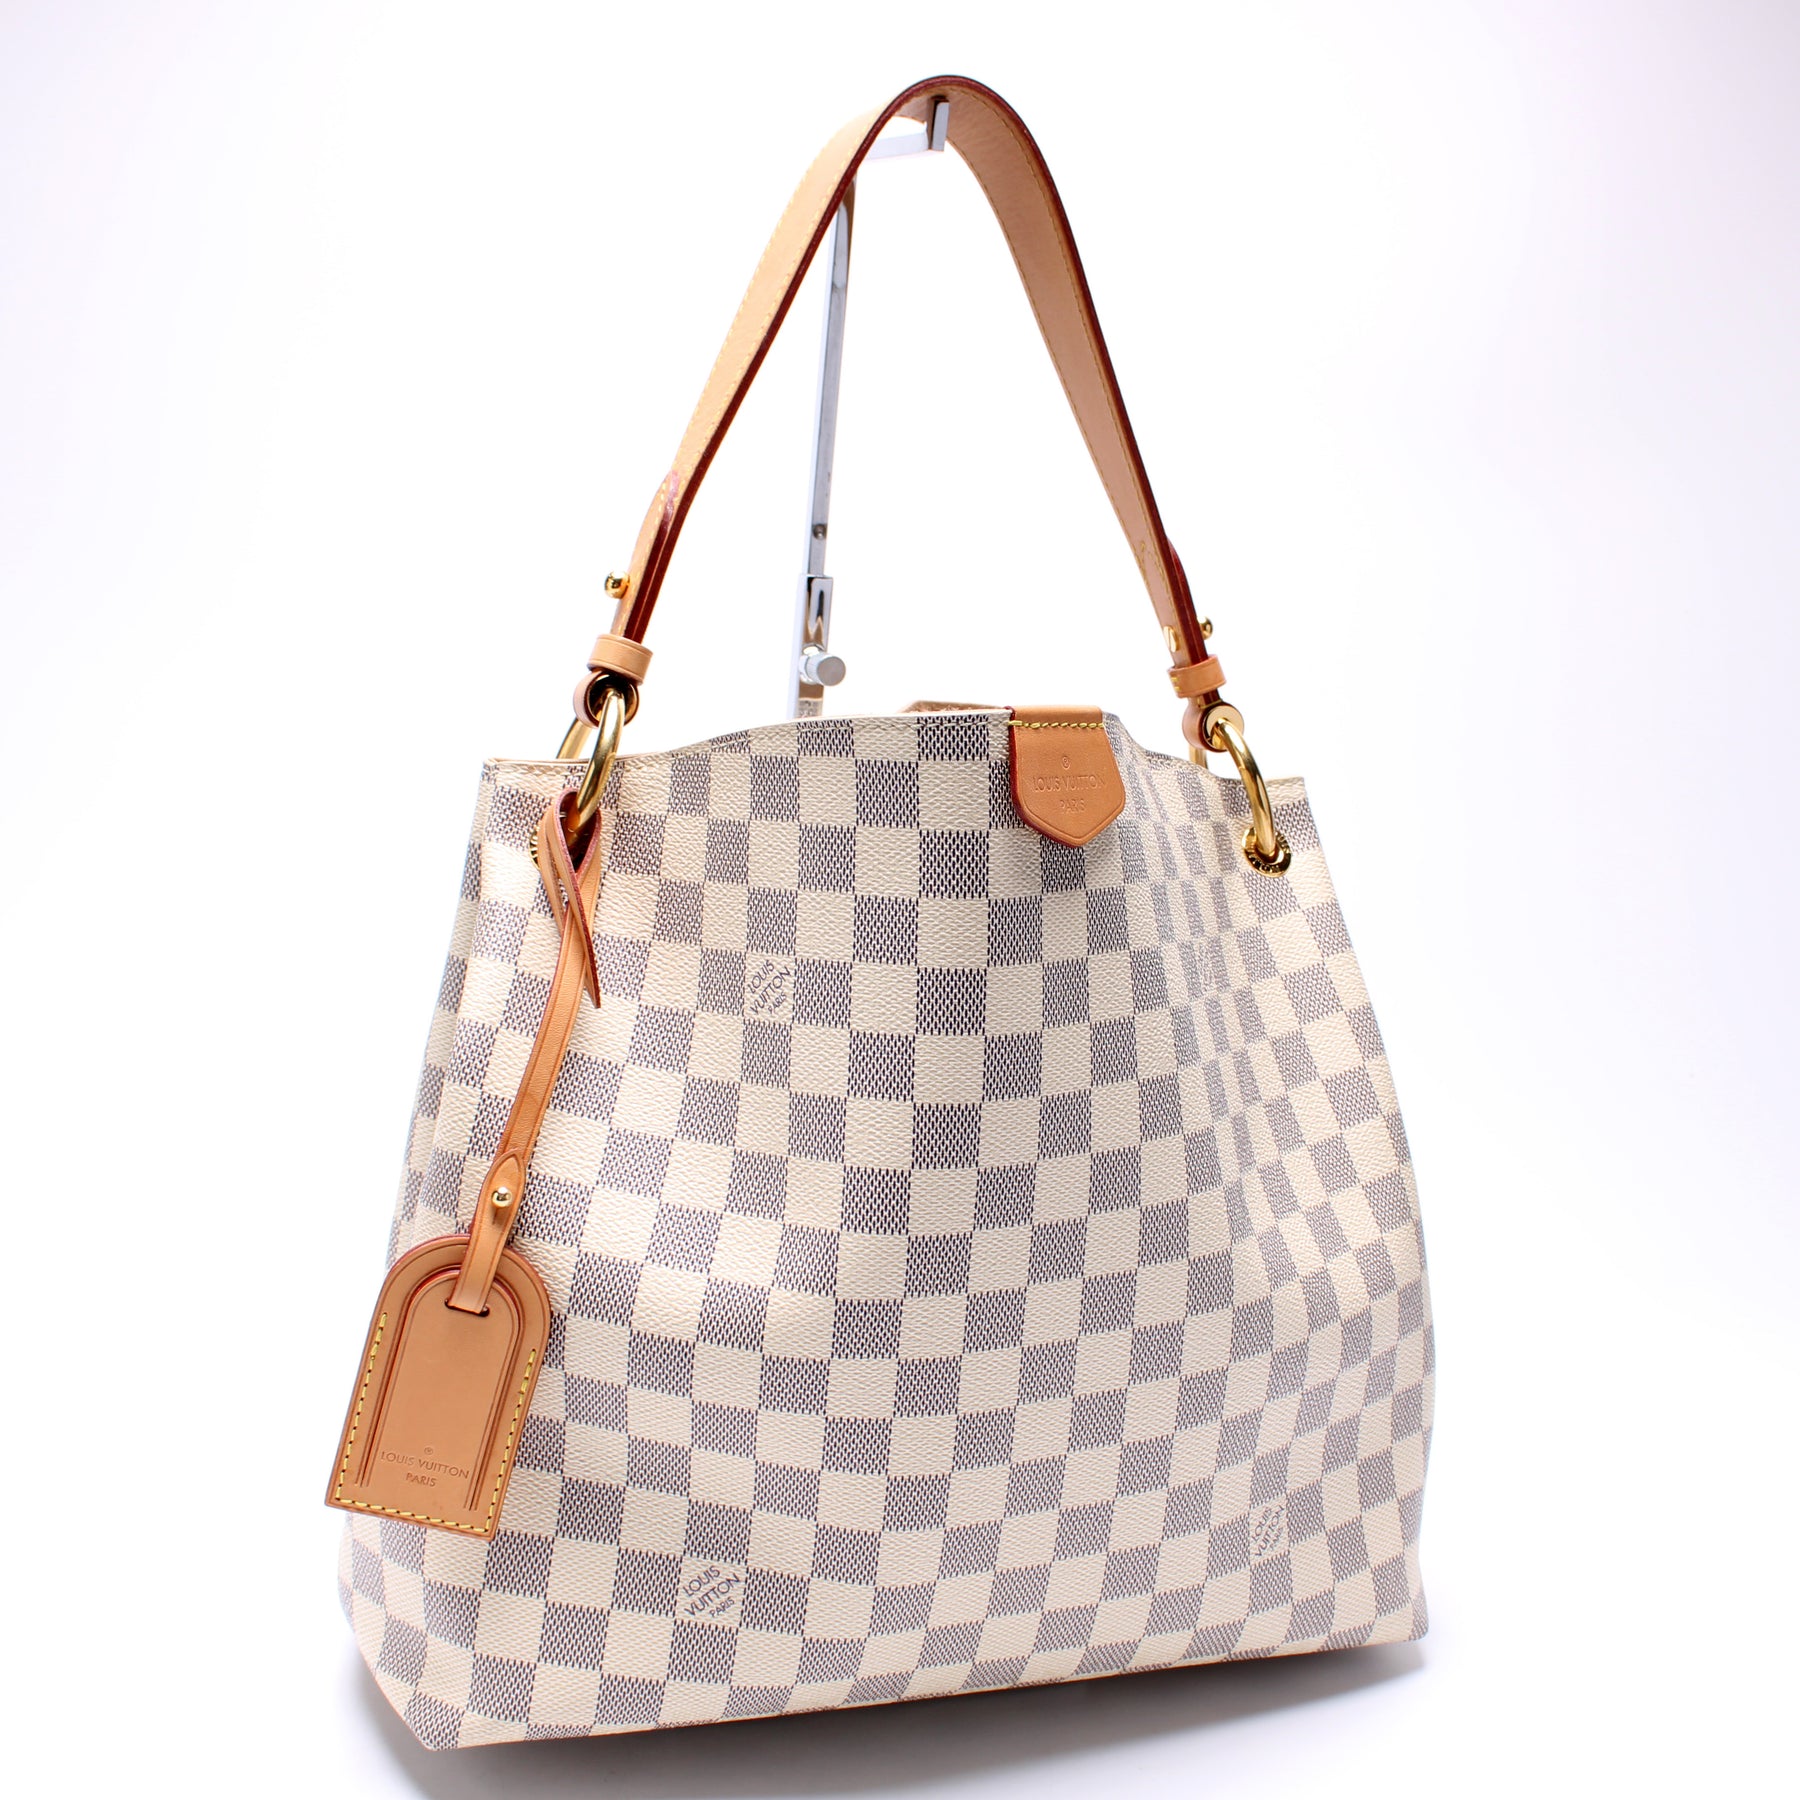 Louis Vuitton Graceful PM Damier Azur Shoulder Bag